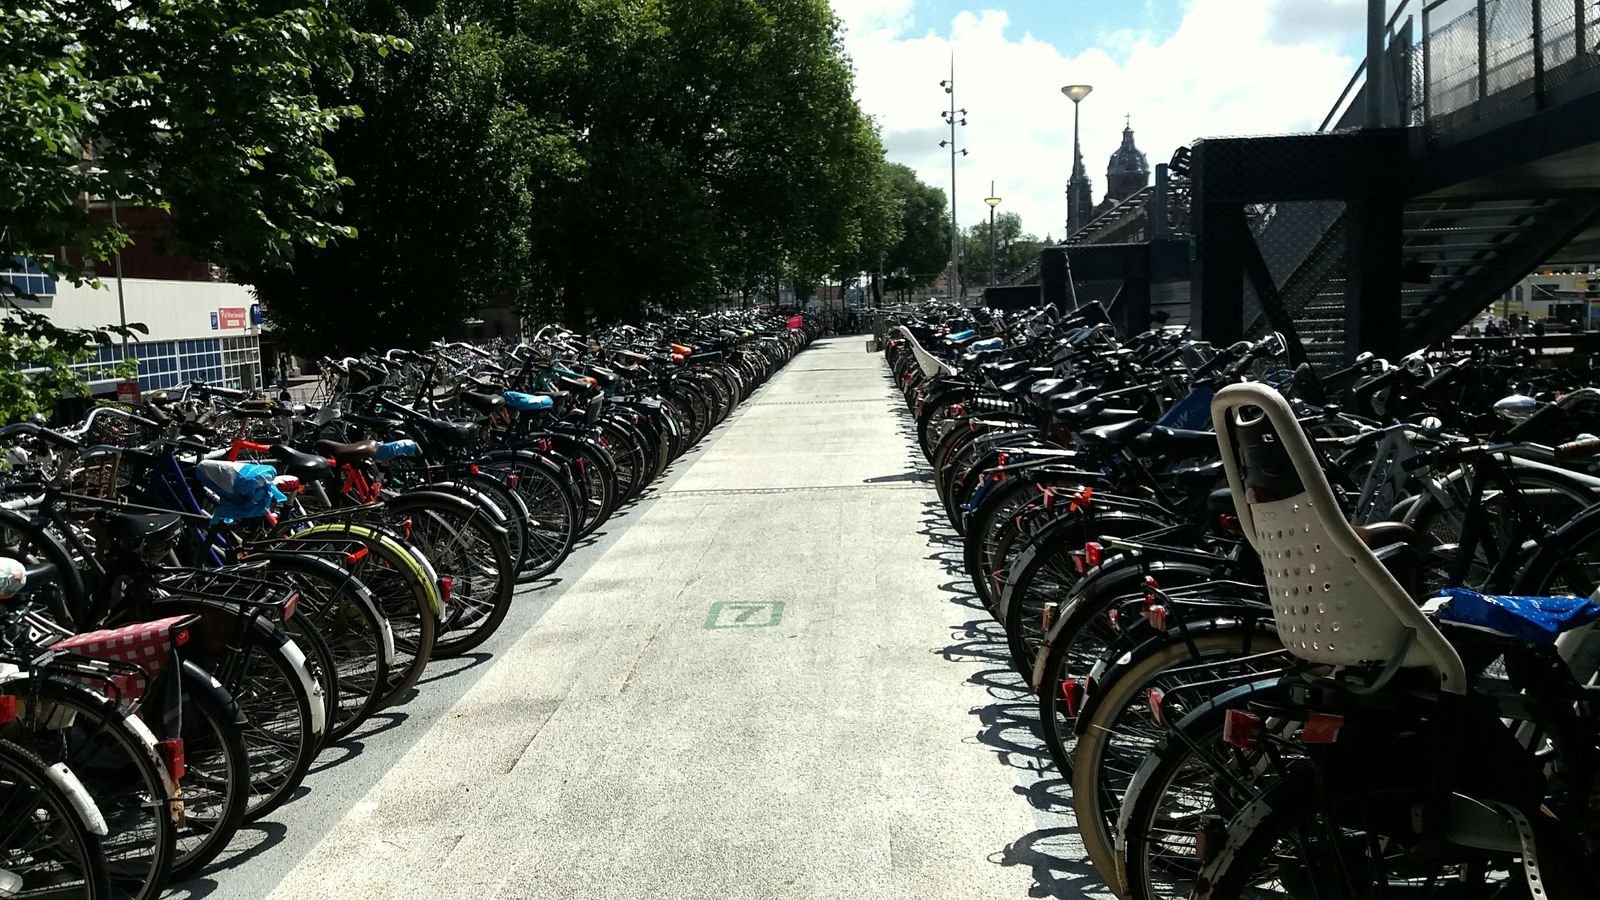 Una din parcările de biciclete de lângă gara centrală, cu o capacitate de 2.500 de locuri